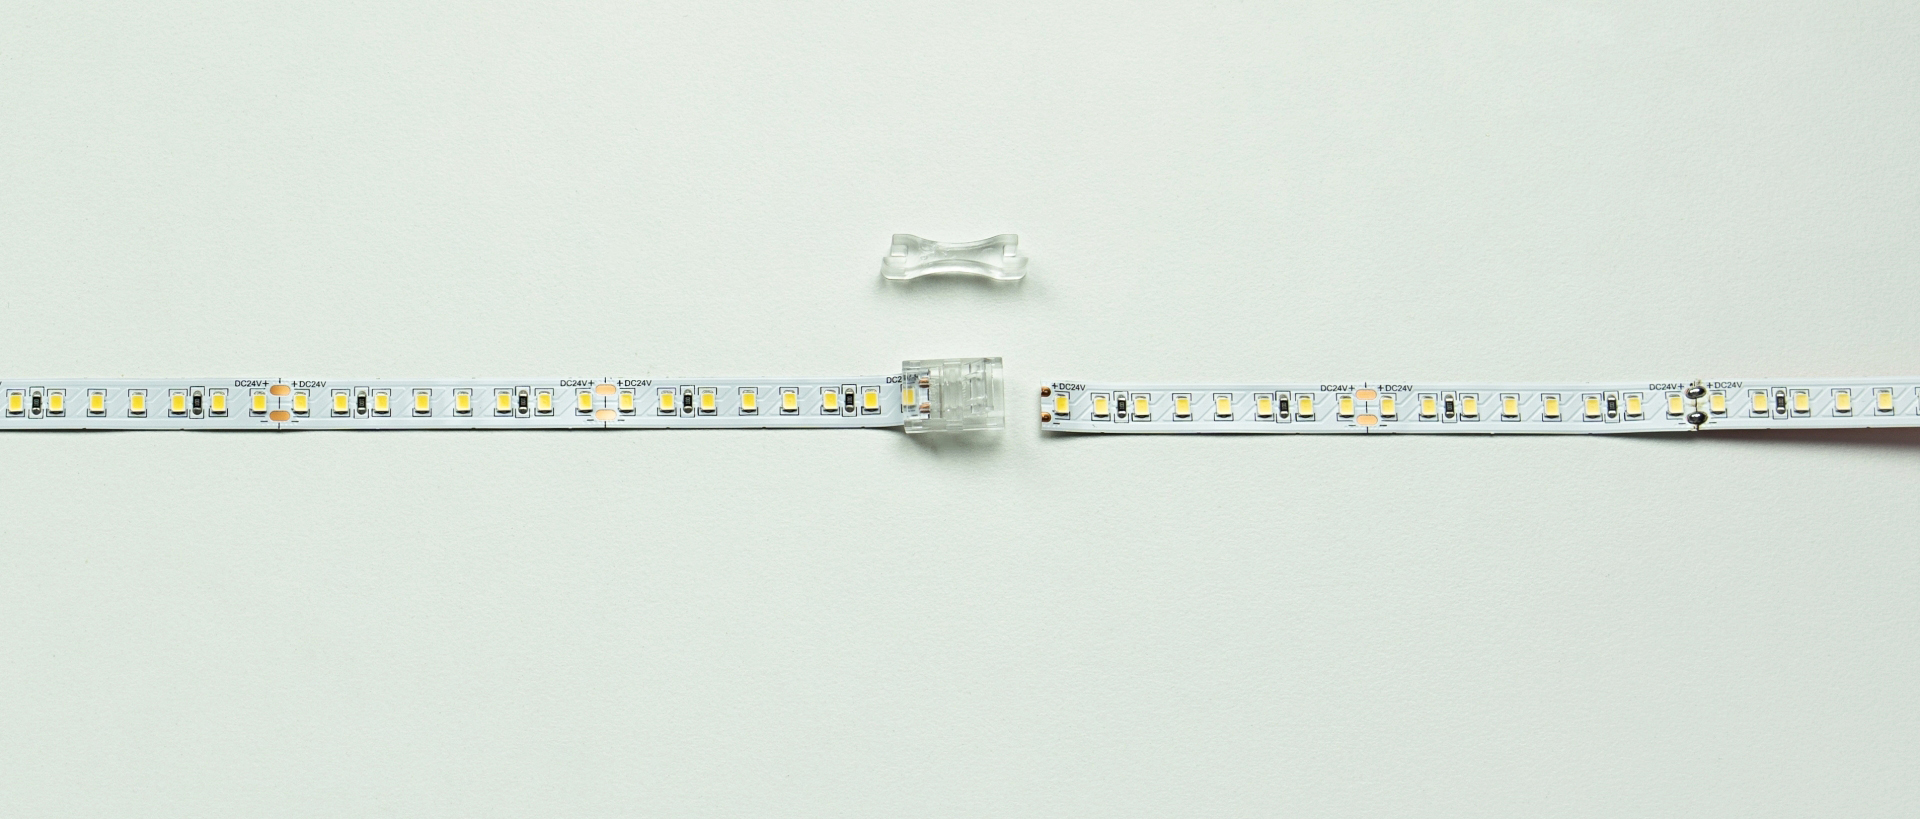 Rozłączenia taśm LED przy pomocy otwieracza do złącz